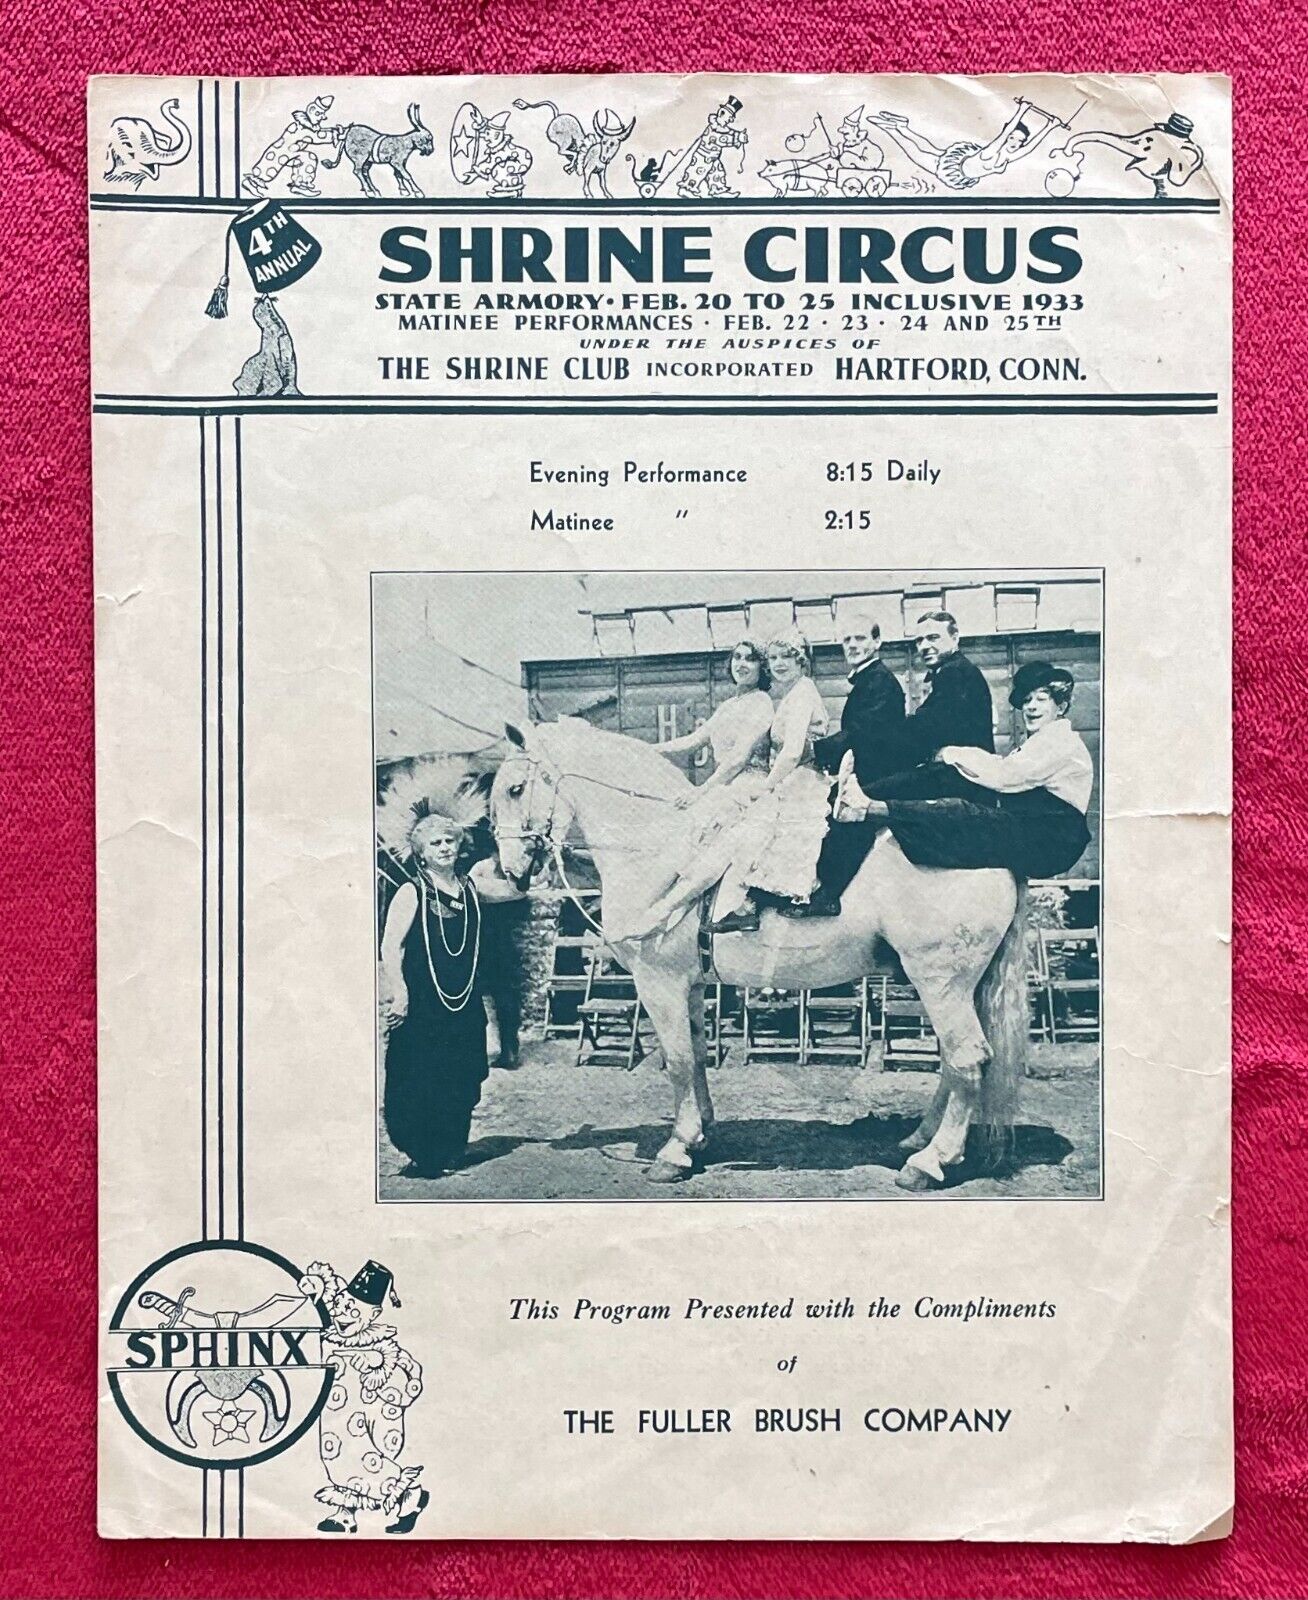 4th ANNUAL SHRINE CIRCUS 1933 PROGRAM - SHRINERS CLUB, HARTFORD ...